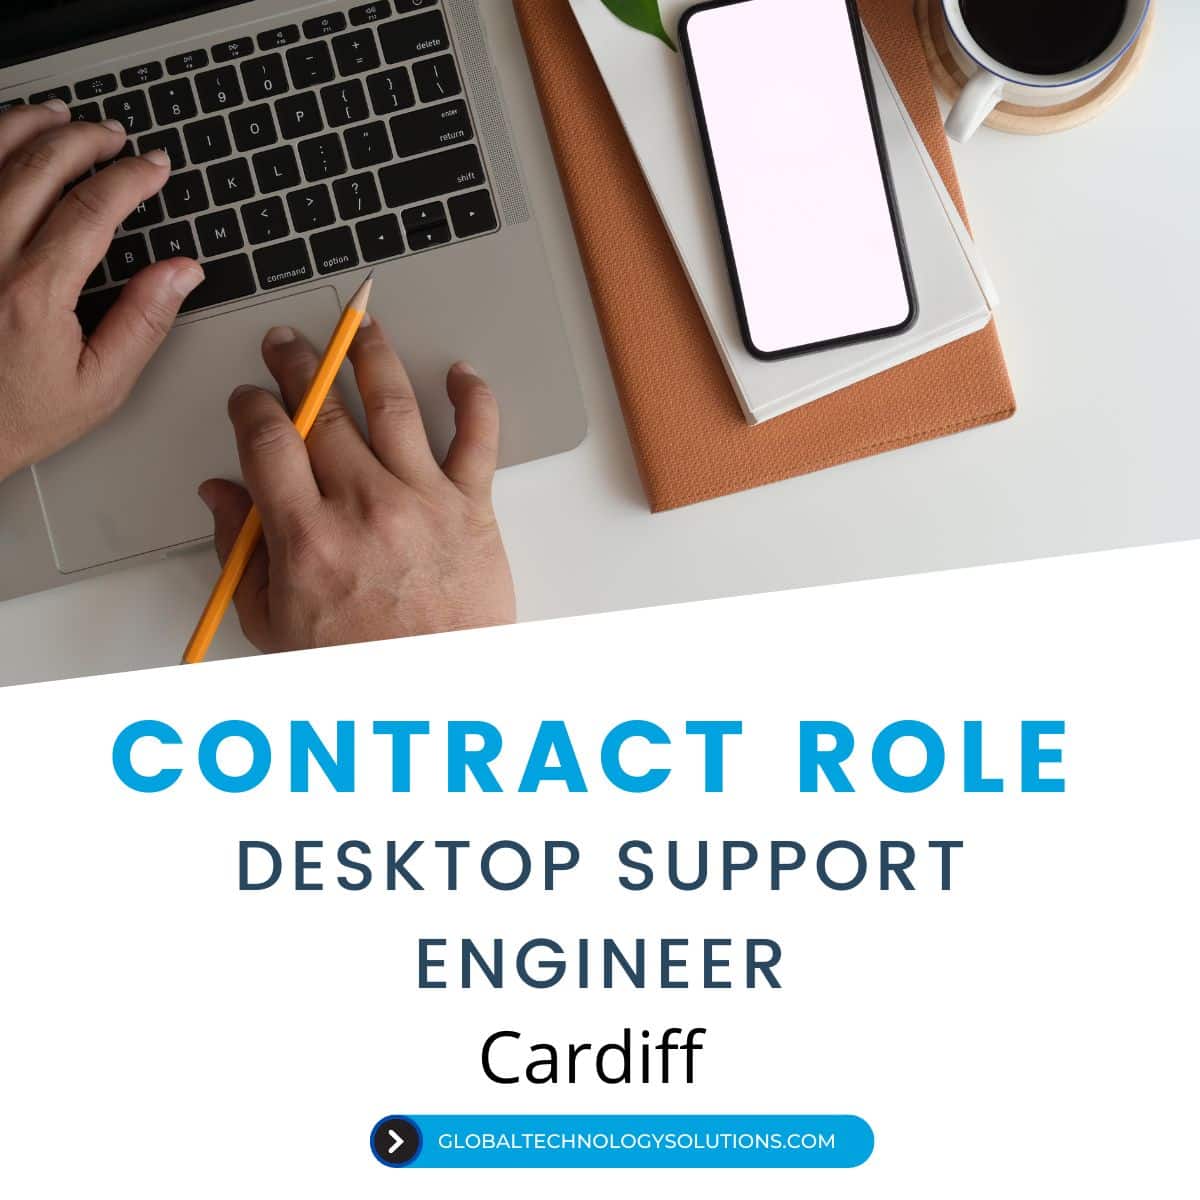 IT Jobs in Cardiff, Desktop Support Engineer.